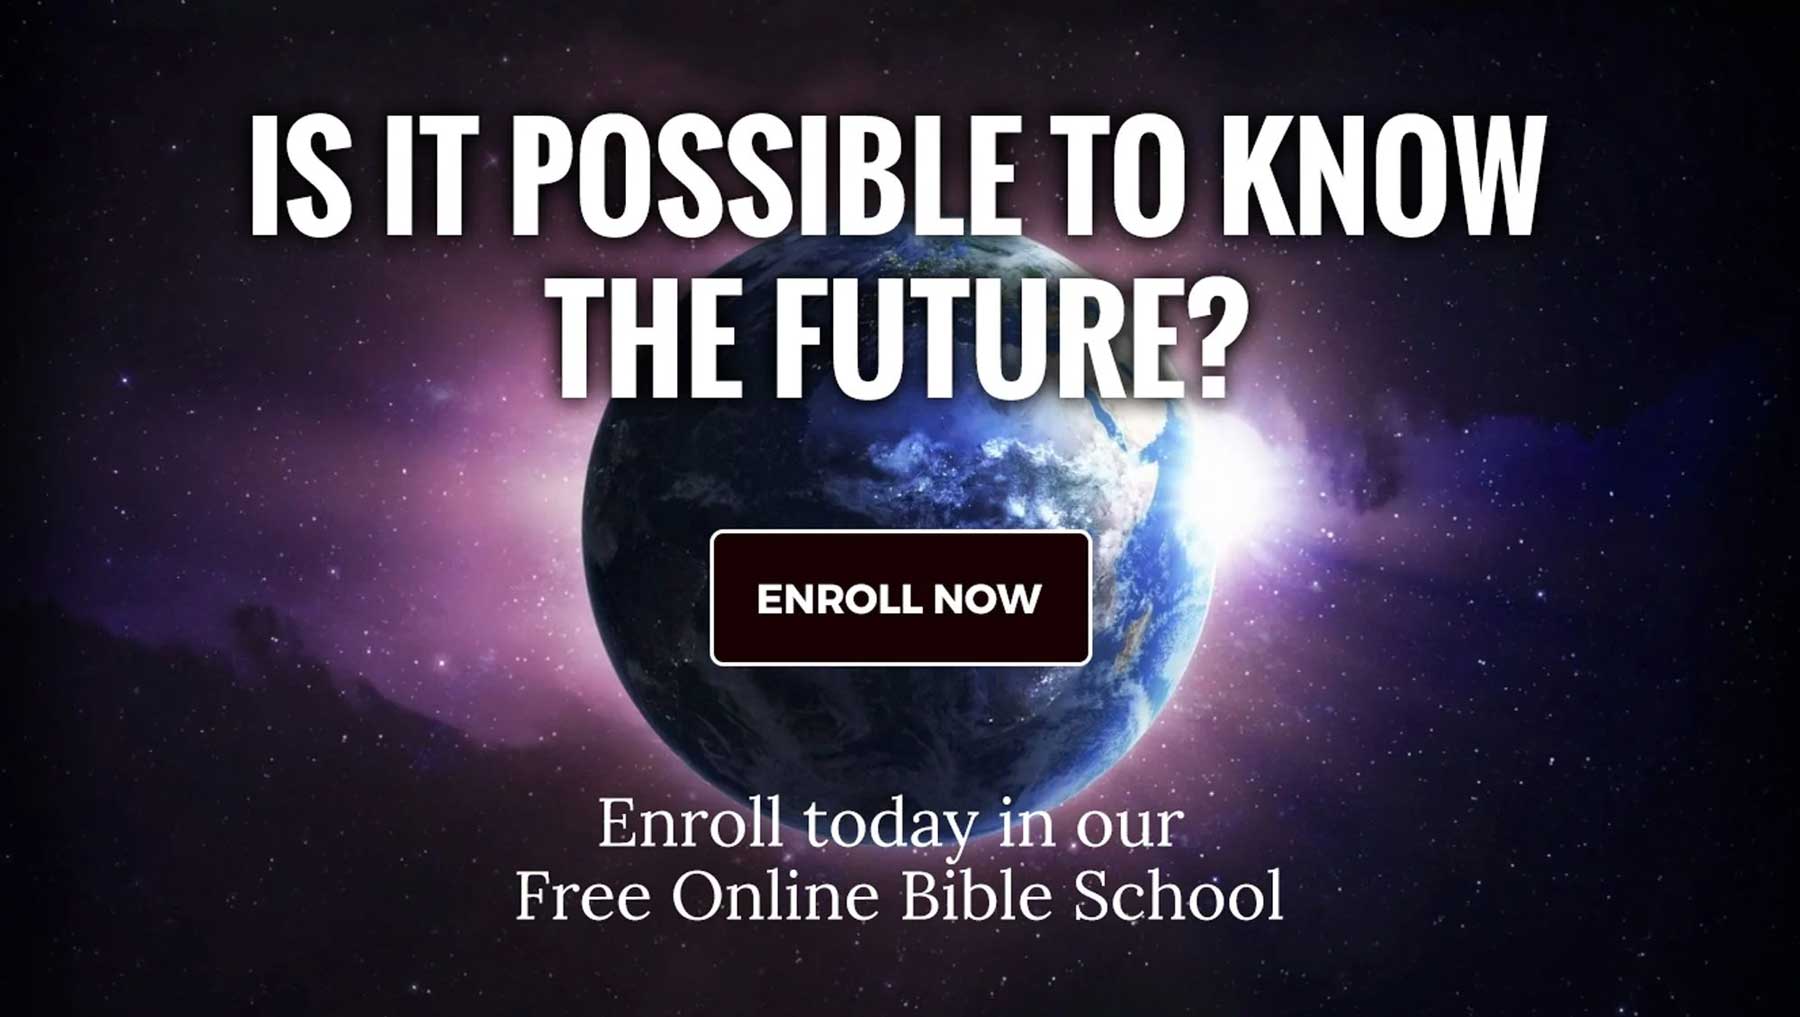 Amazing Bible Studies - Free Online Bible School